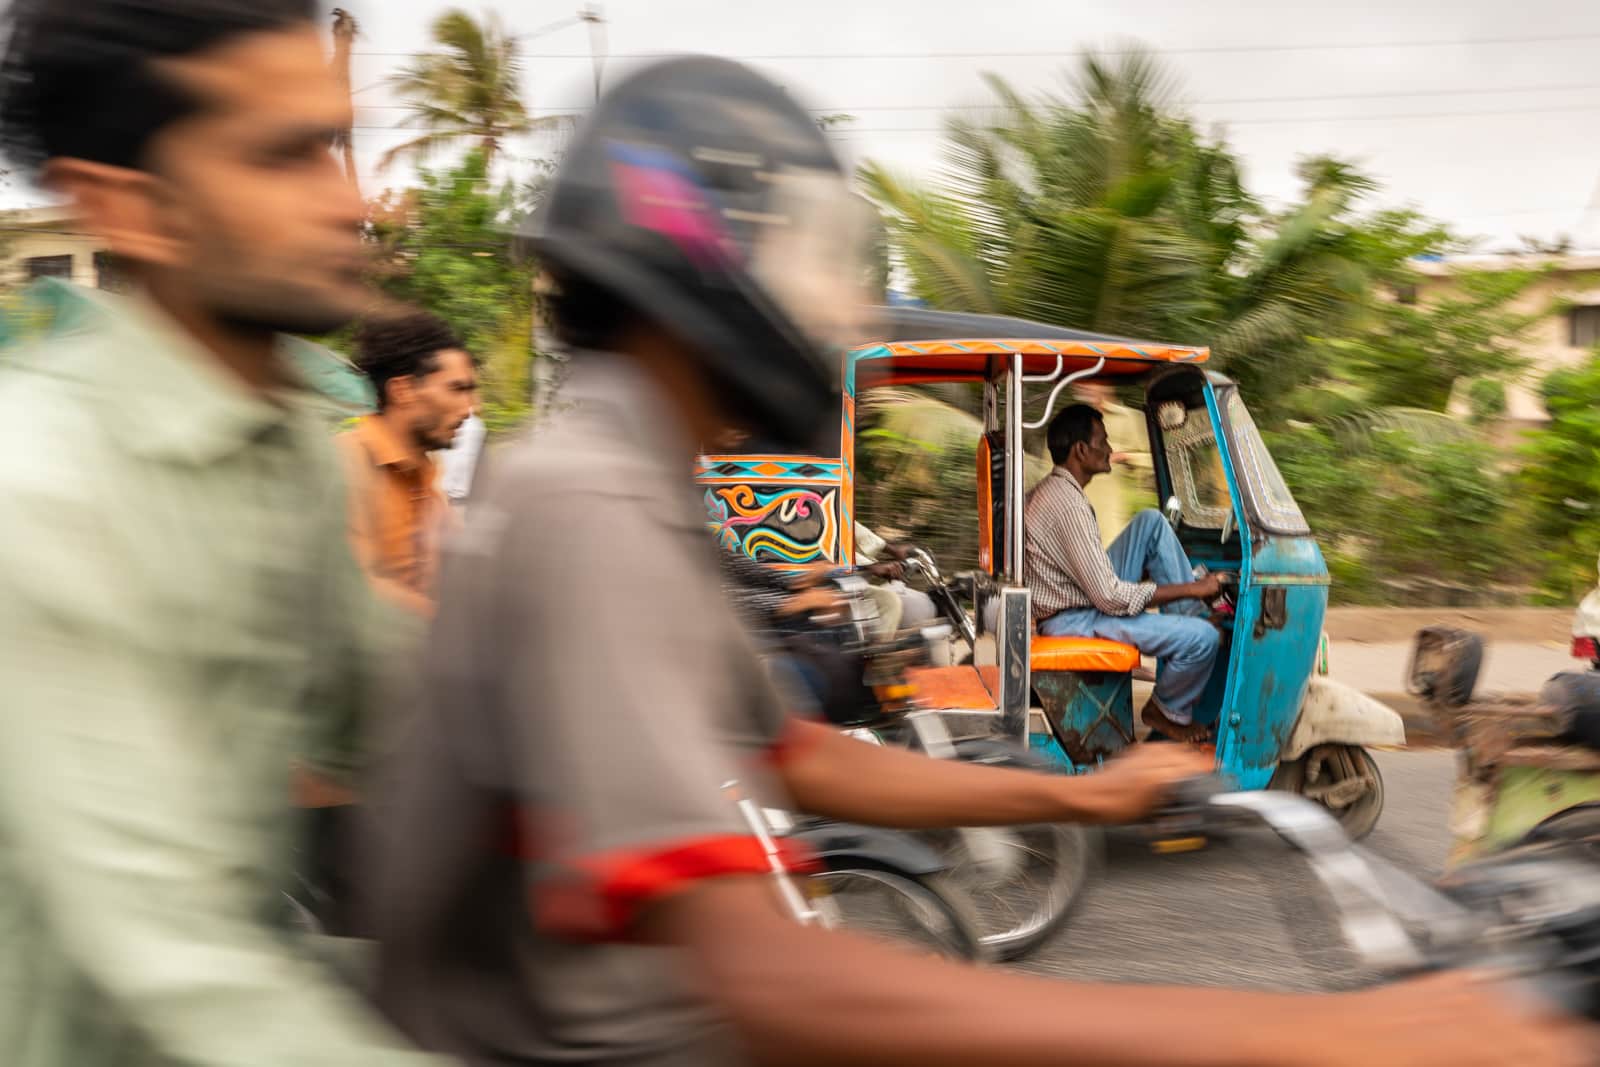 Motorbiking as a woman in Pakistan - Motorbikes and rickshaws in Karachi traffic - Lost With Purpose travel blog